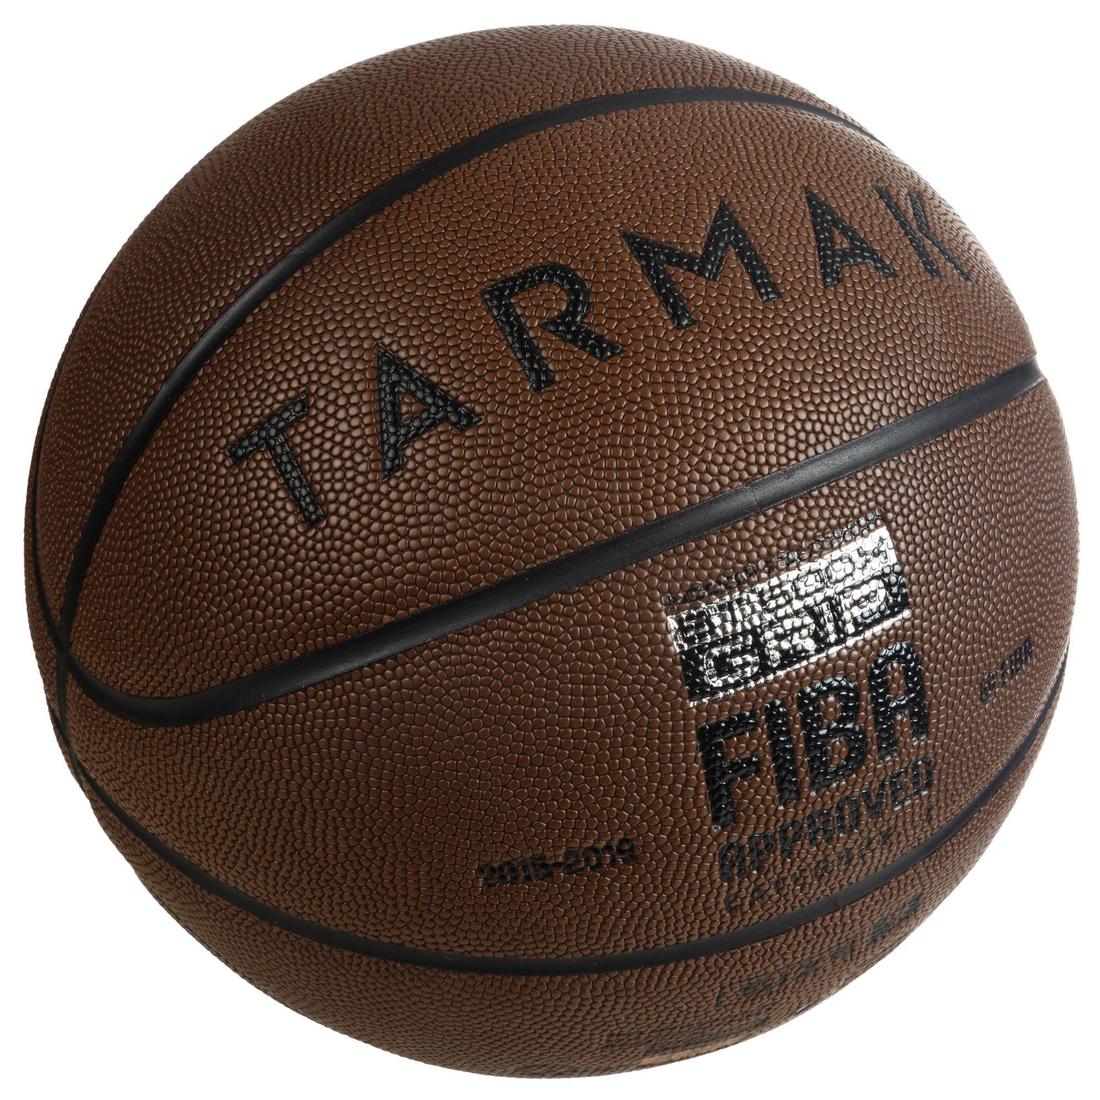 TARMAK(ターマック) バスケットボール BT500 Grip 7号 大人用